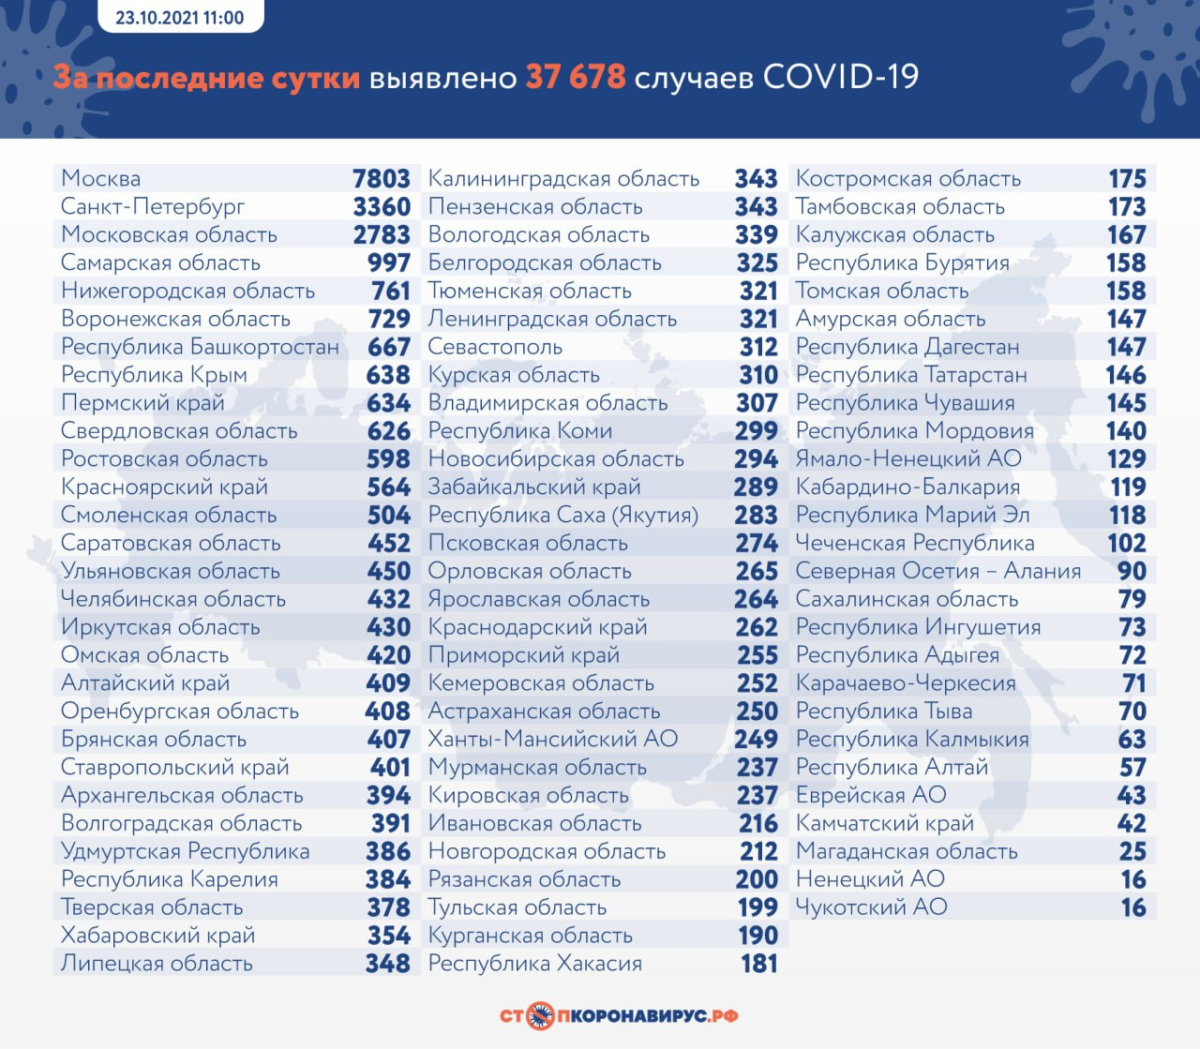 В России на утро 23 октября выявили более 37 тысяч случаев COVID-19 и 1075 смертей в результате него